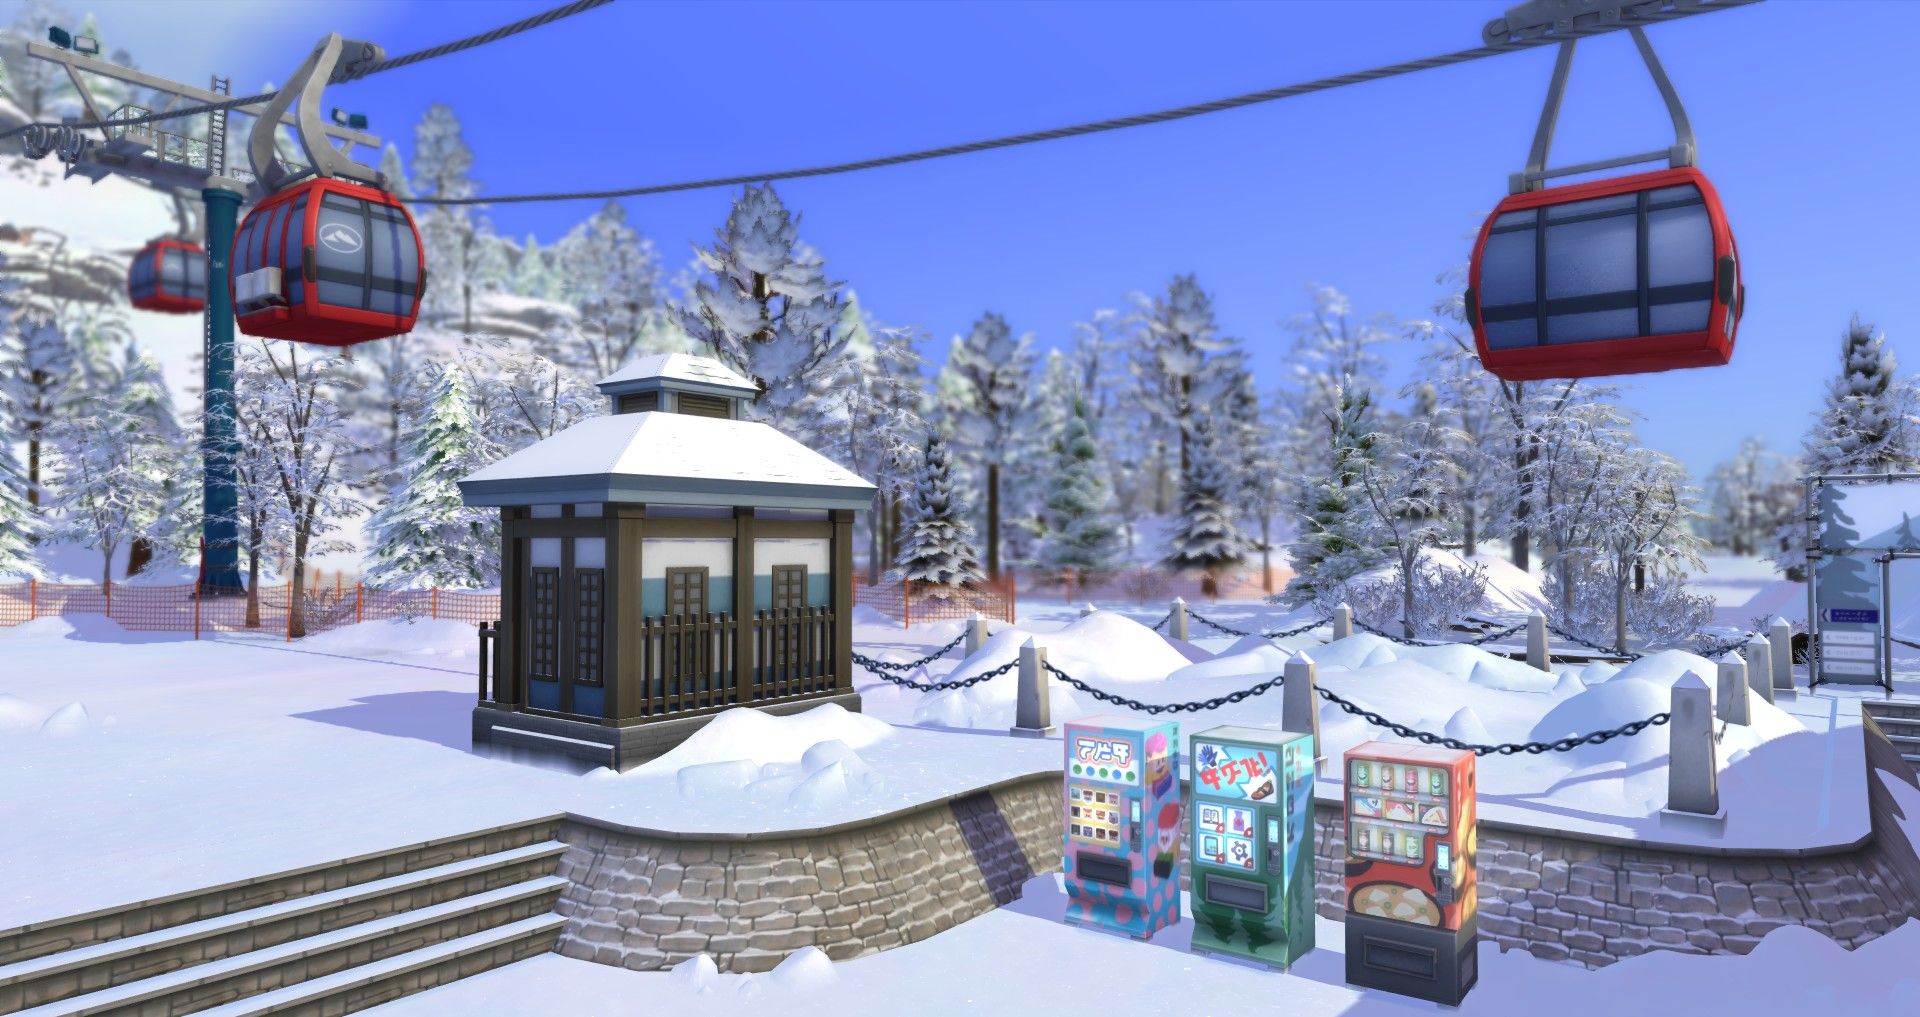 автоматы для продажи товаров в Юкимацу на горе Мт. Комореби в The Sims 4: Снежная побега